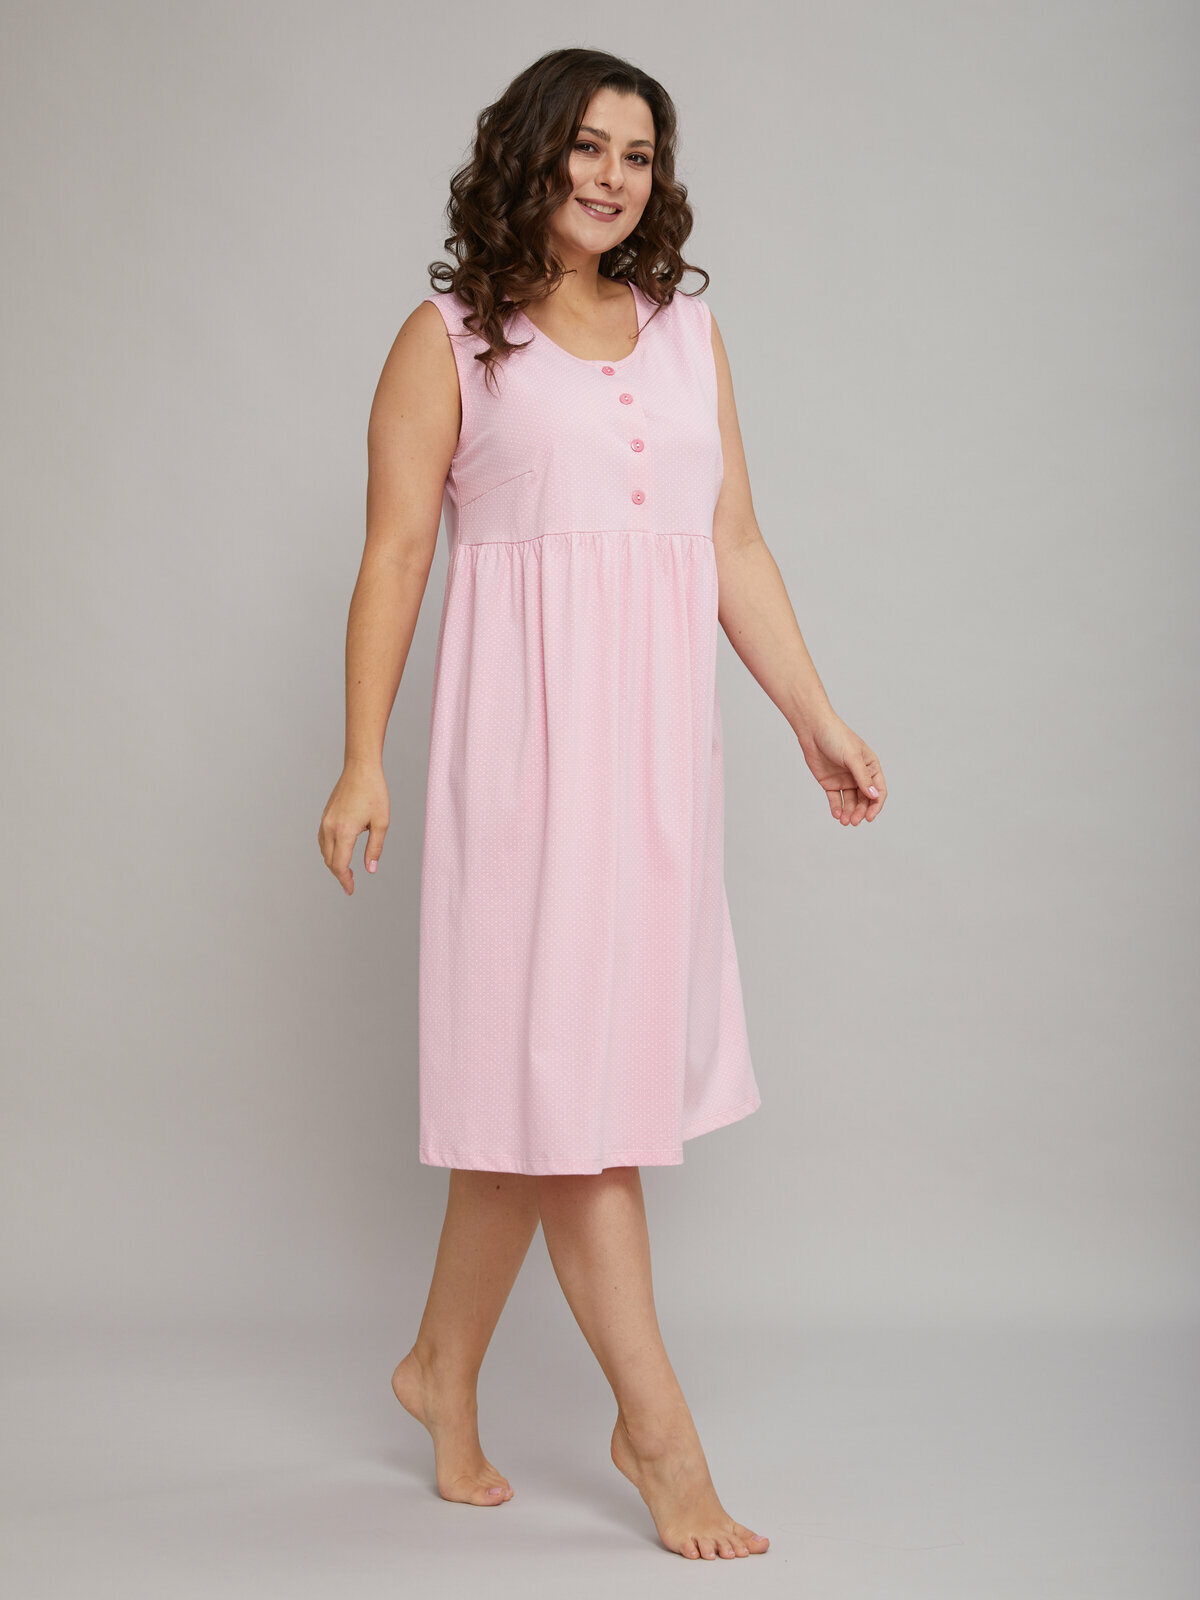 Сорочка ночная женская Алтекс без рукавов розовая в горошек, размер 50 - фотография № 4